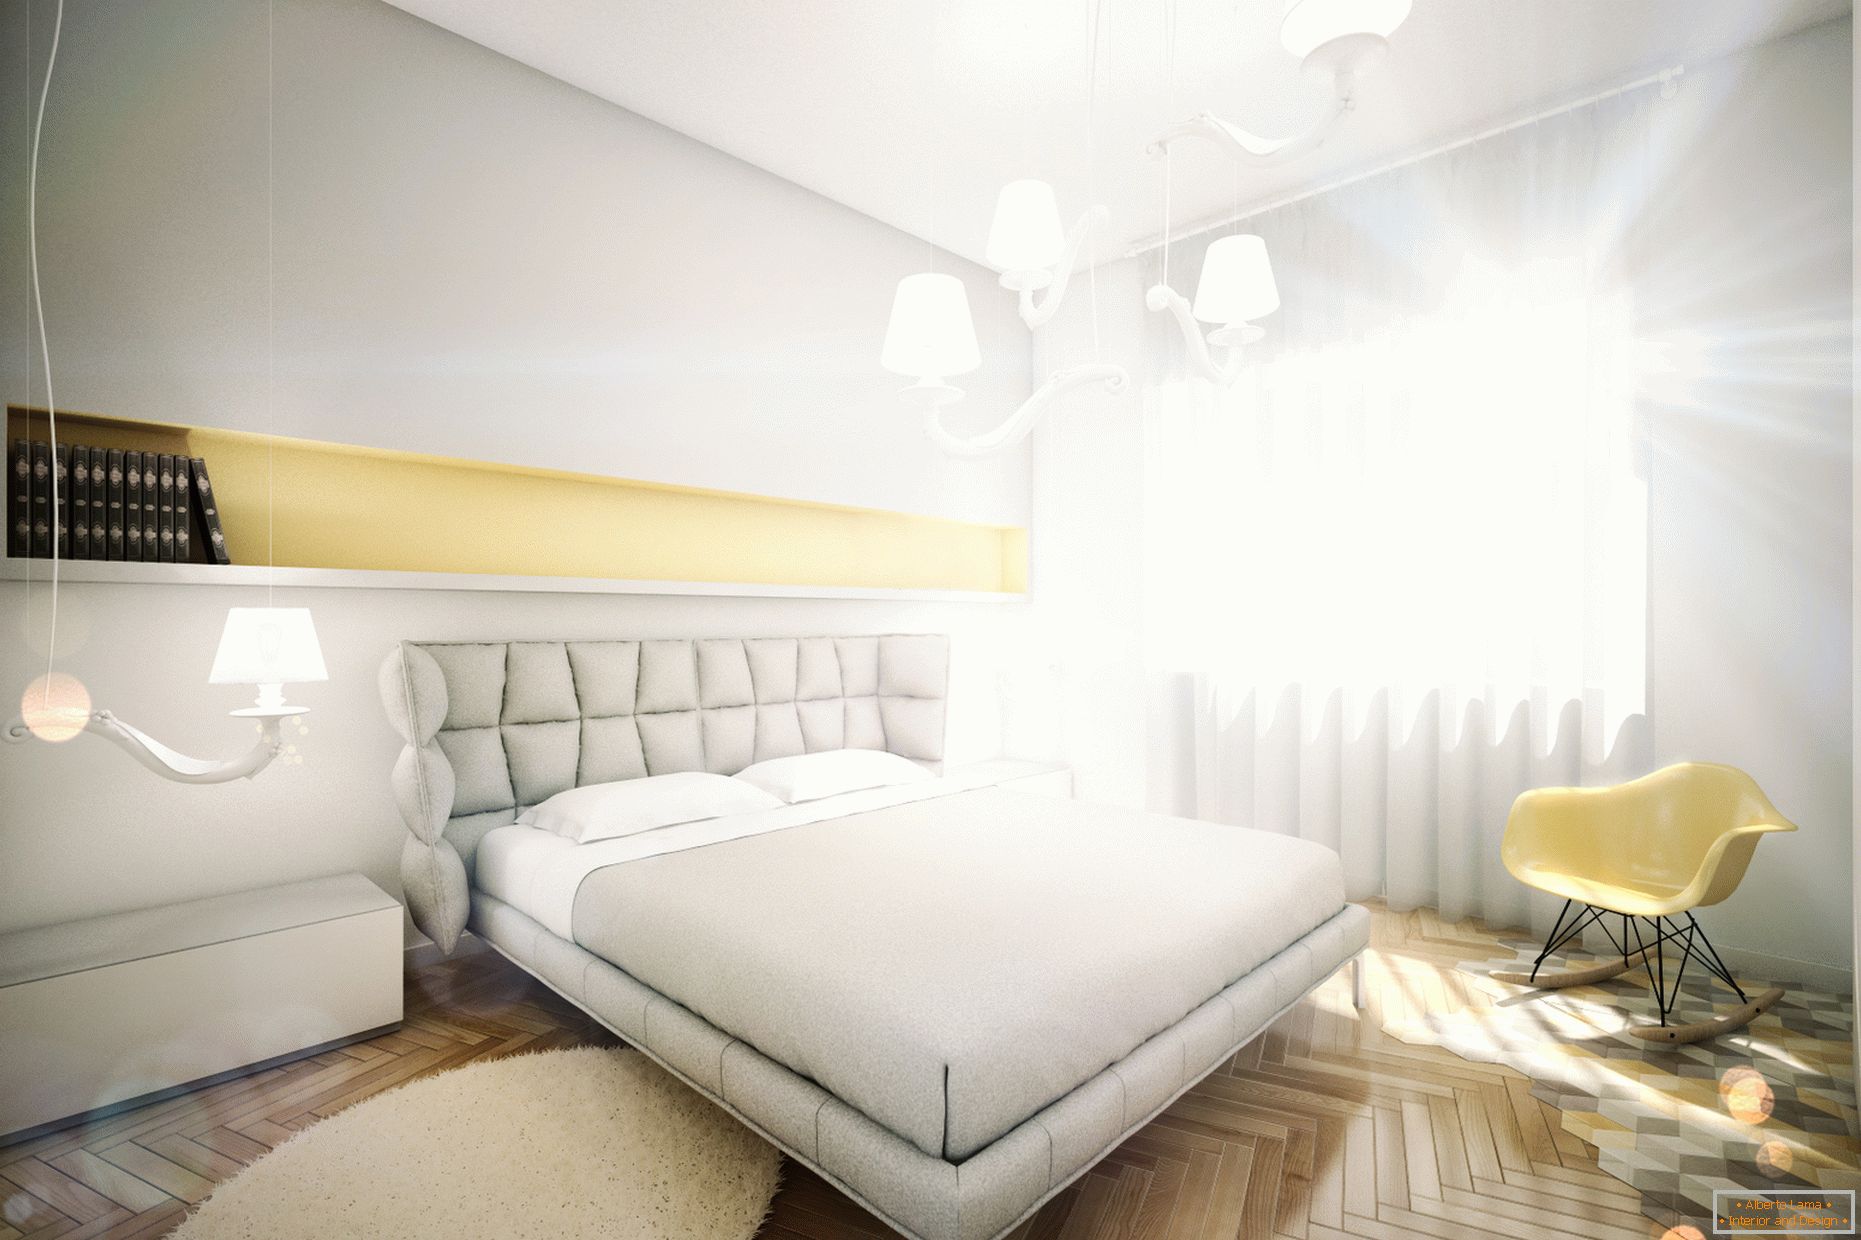 Designový byt v pastelových barvách: ložnice